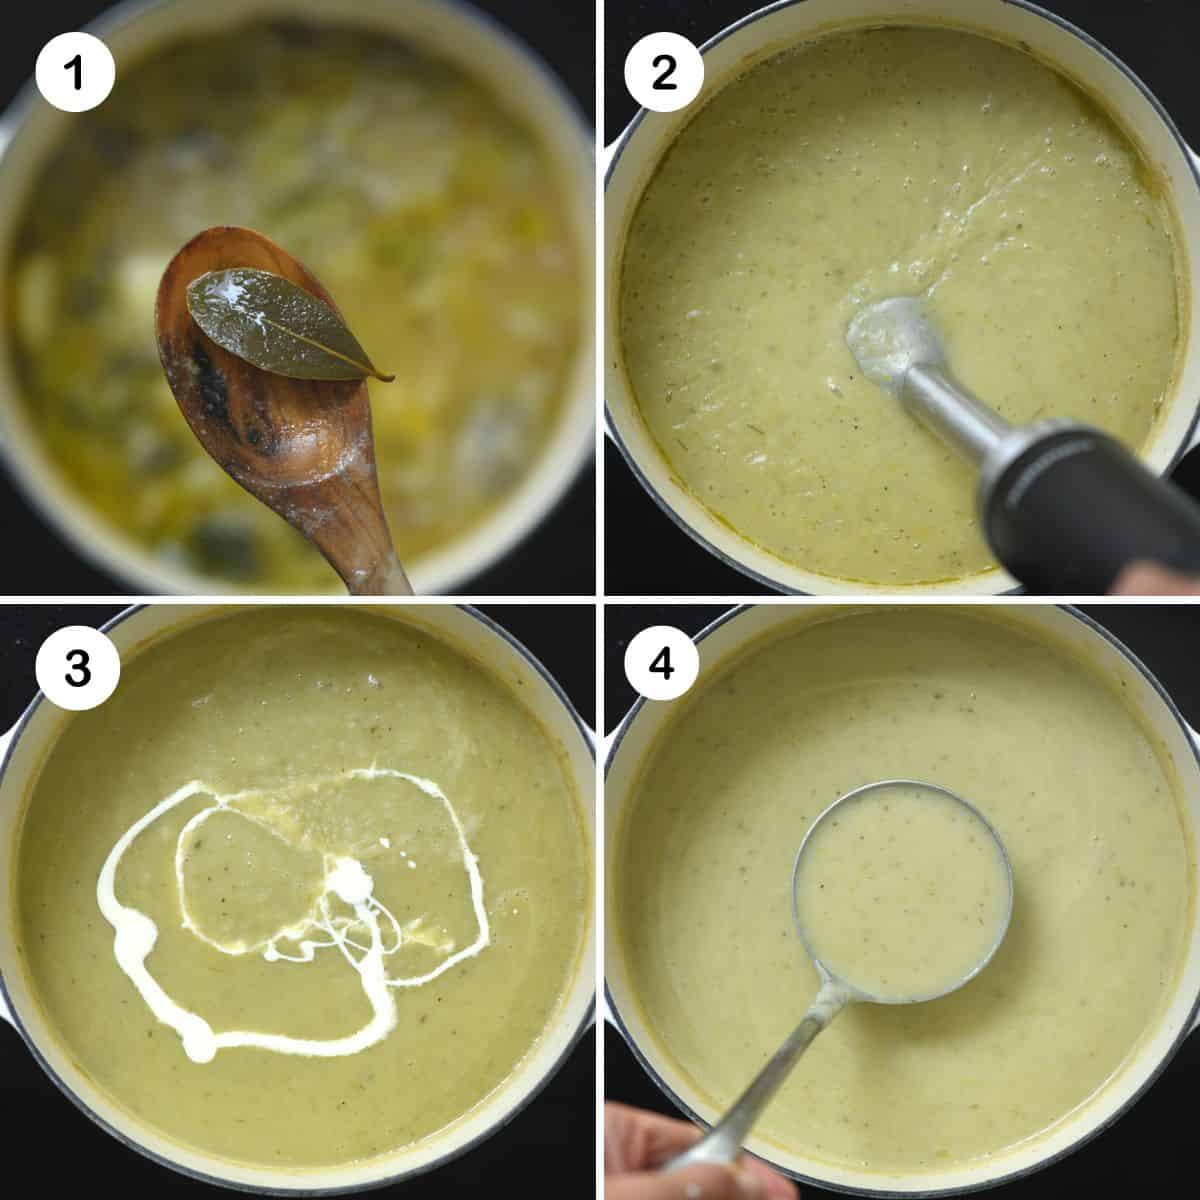 Steps for blending potato leek soup